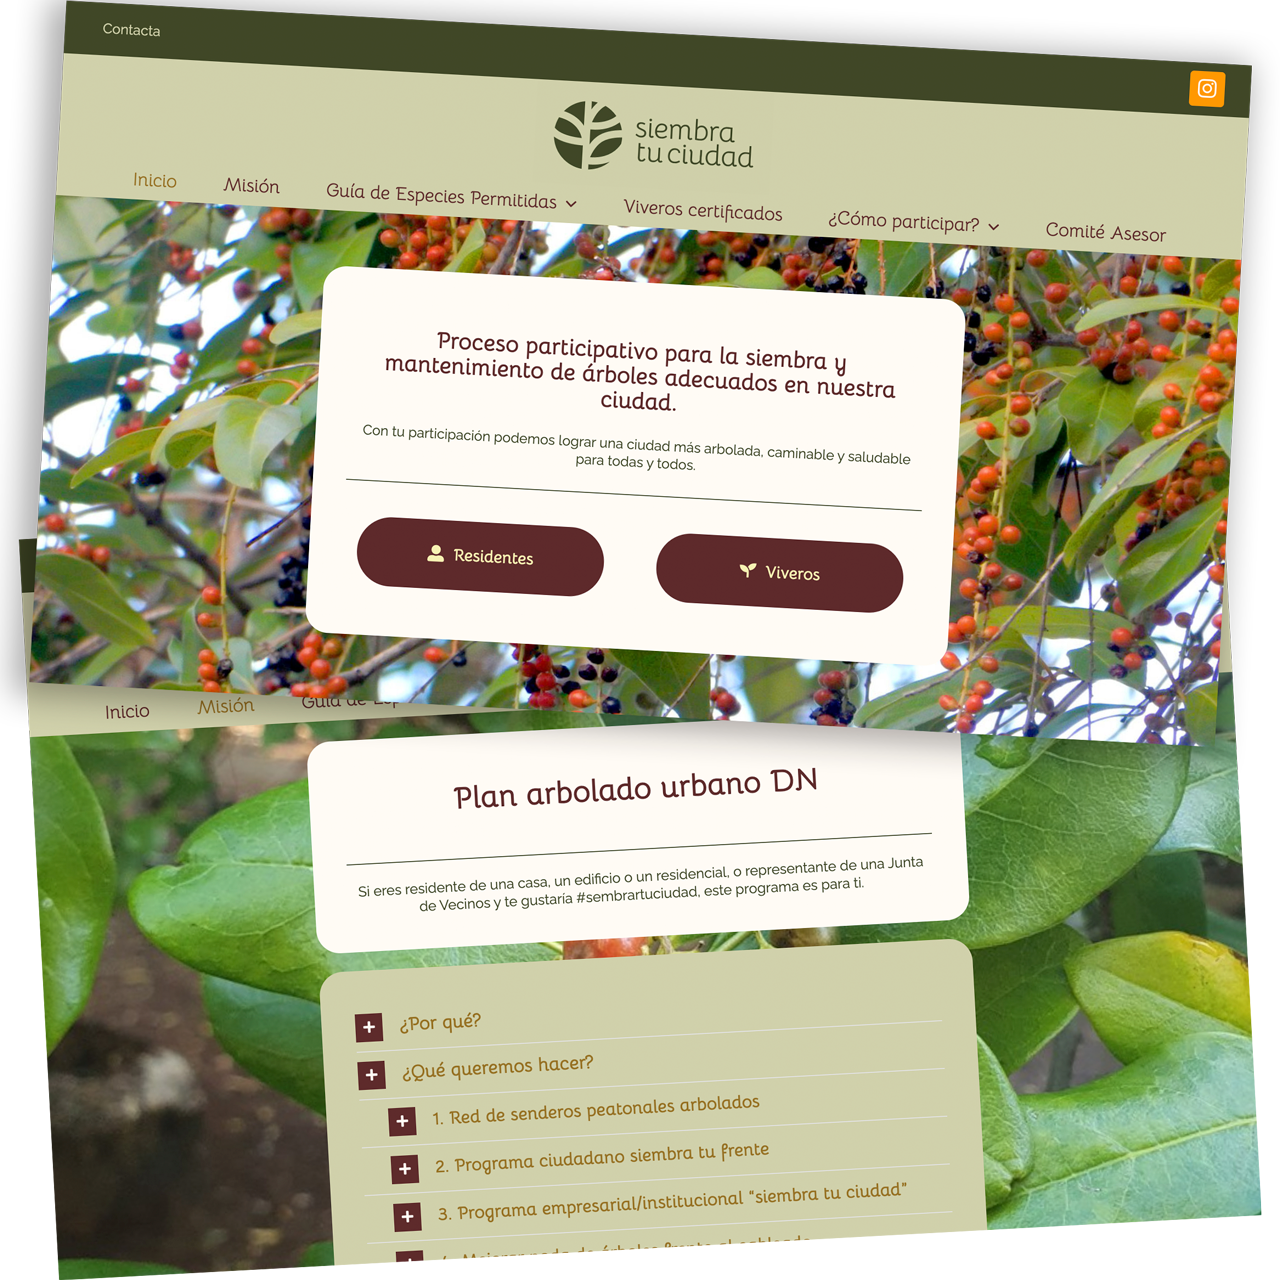 Web design with Wordpress for Republica Dominicada 2020